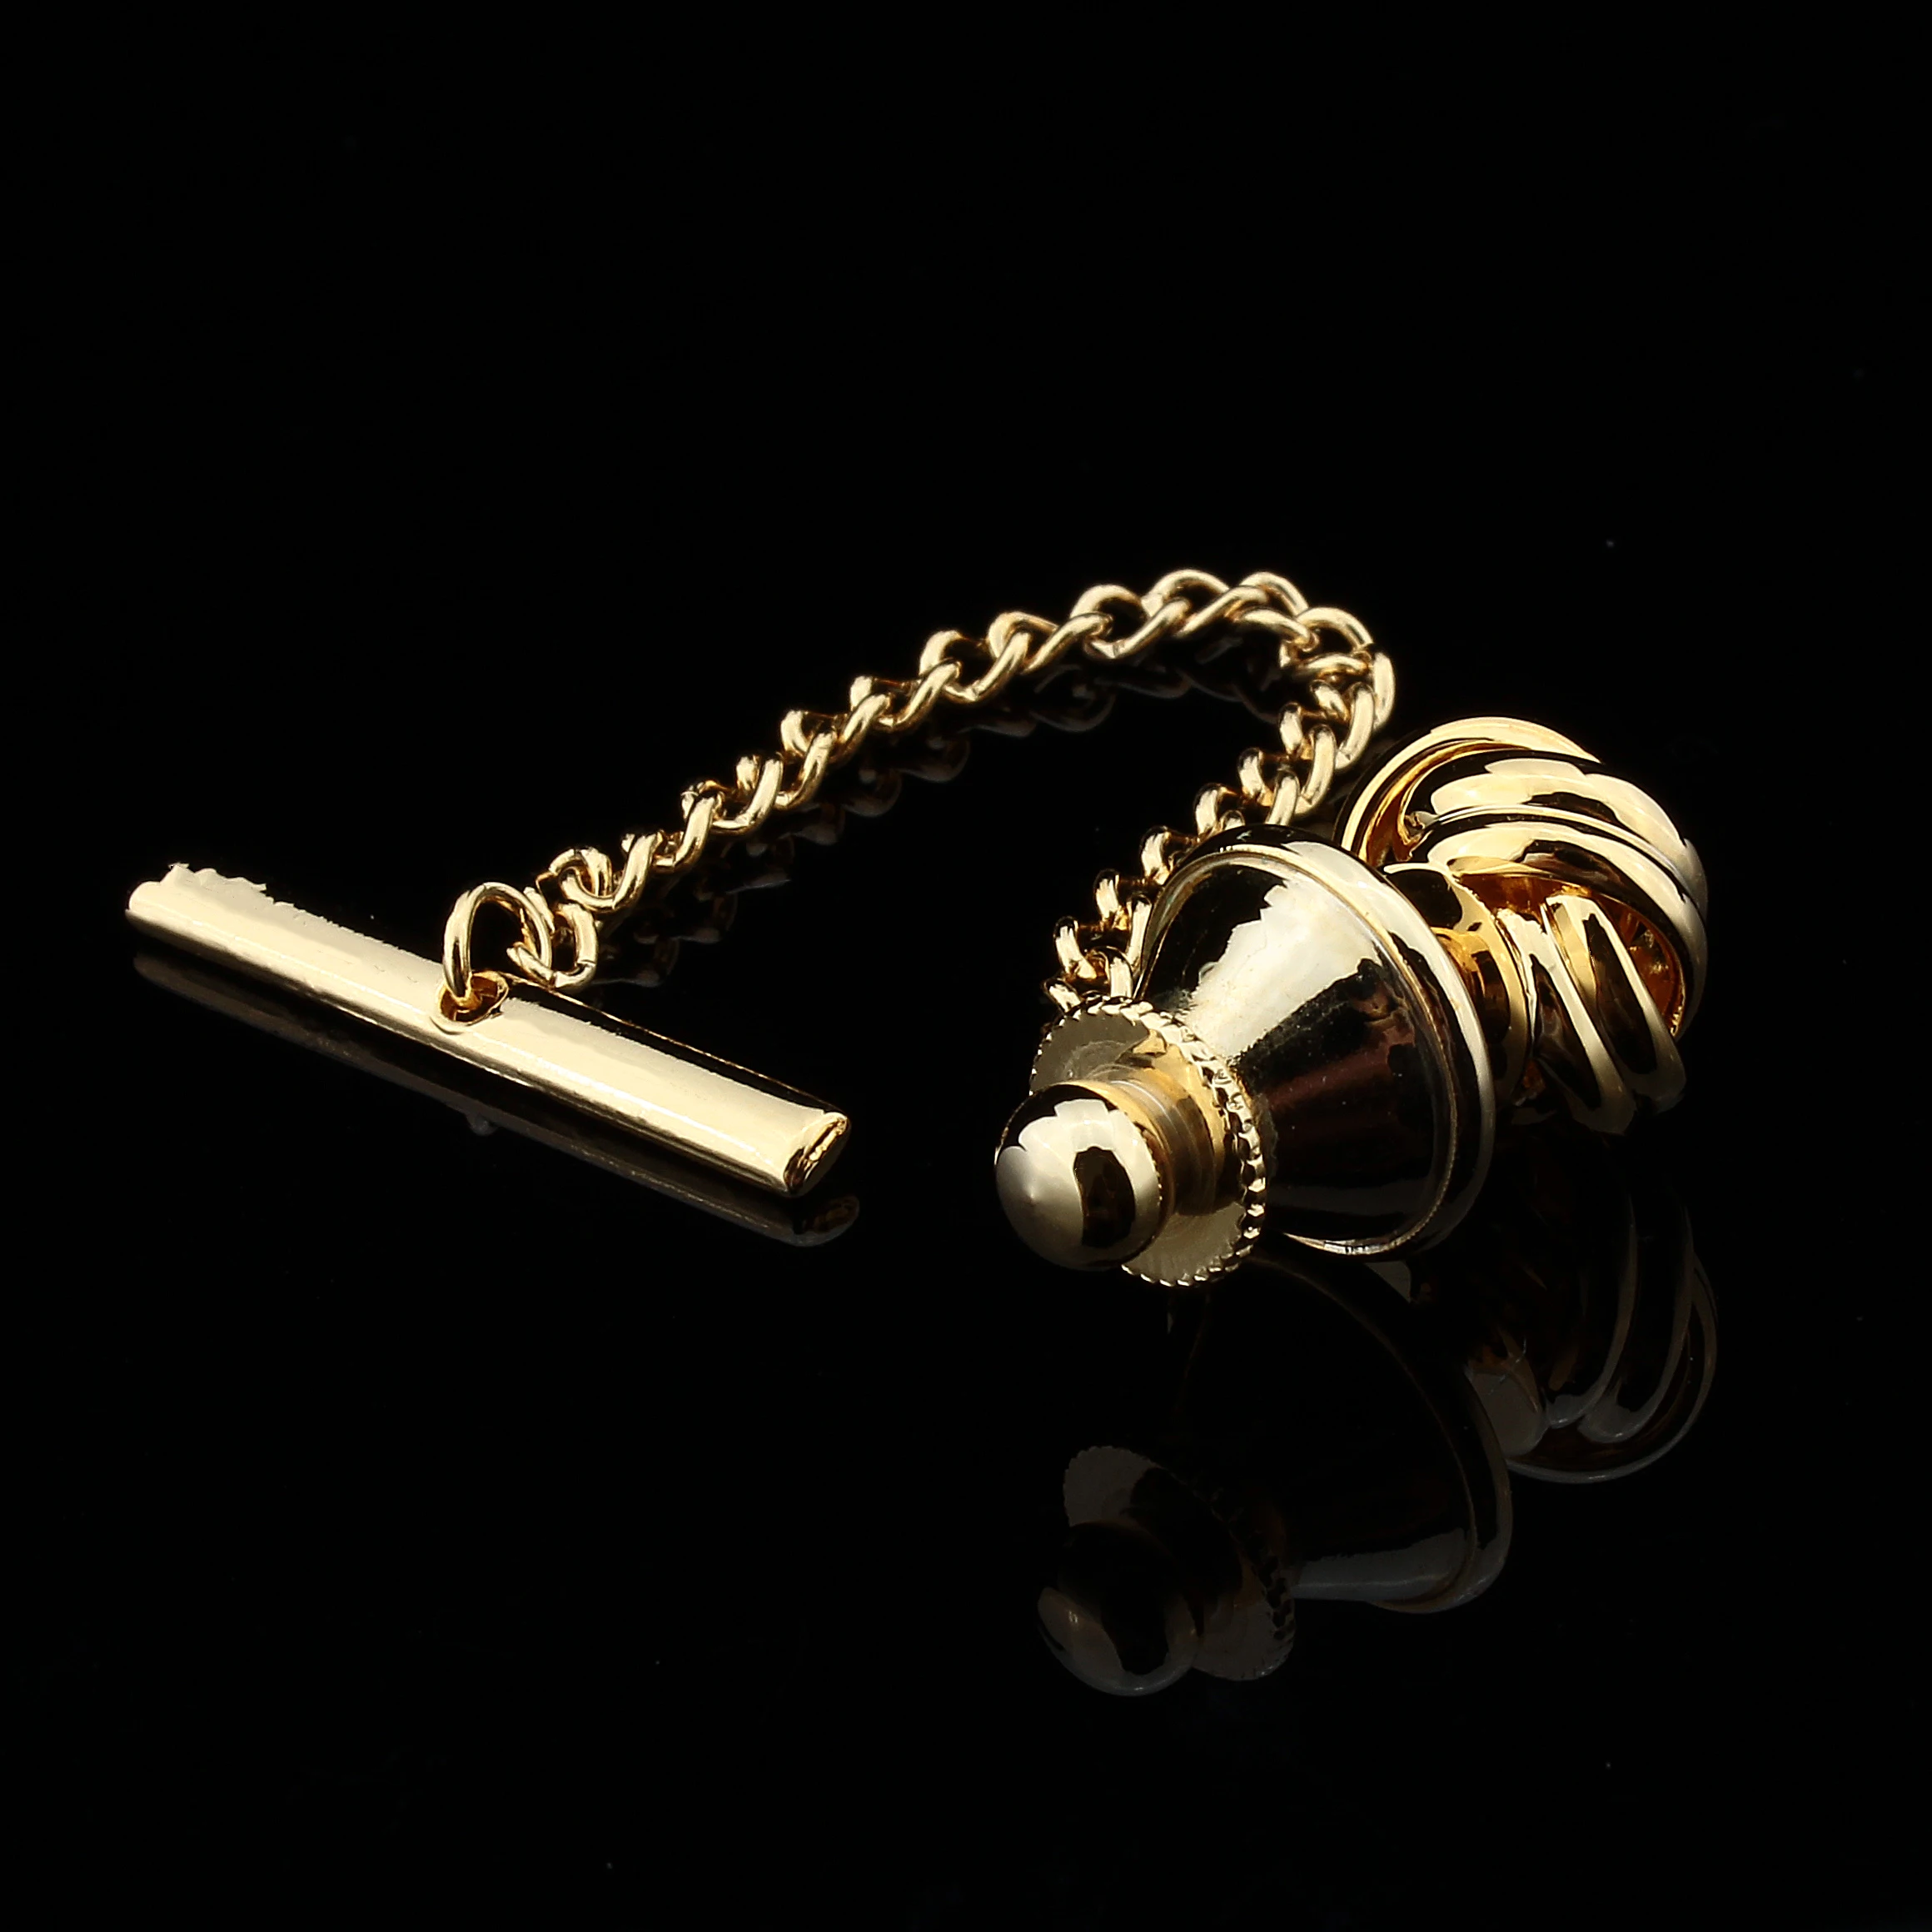 HAWSON металлический узел/фиксатор галстука с предохранителем булавка для галстука золото/розовое золото/имитация родиевое покрытие аксессуар бабочка подарок для мужчин